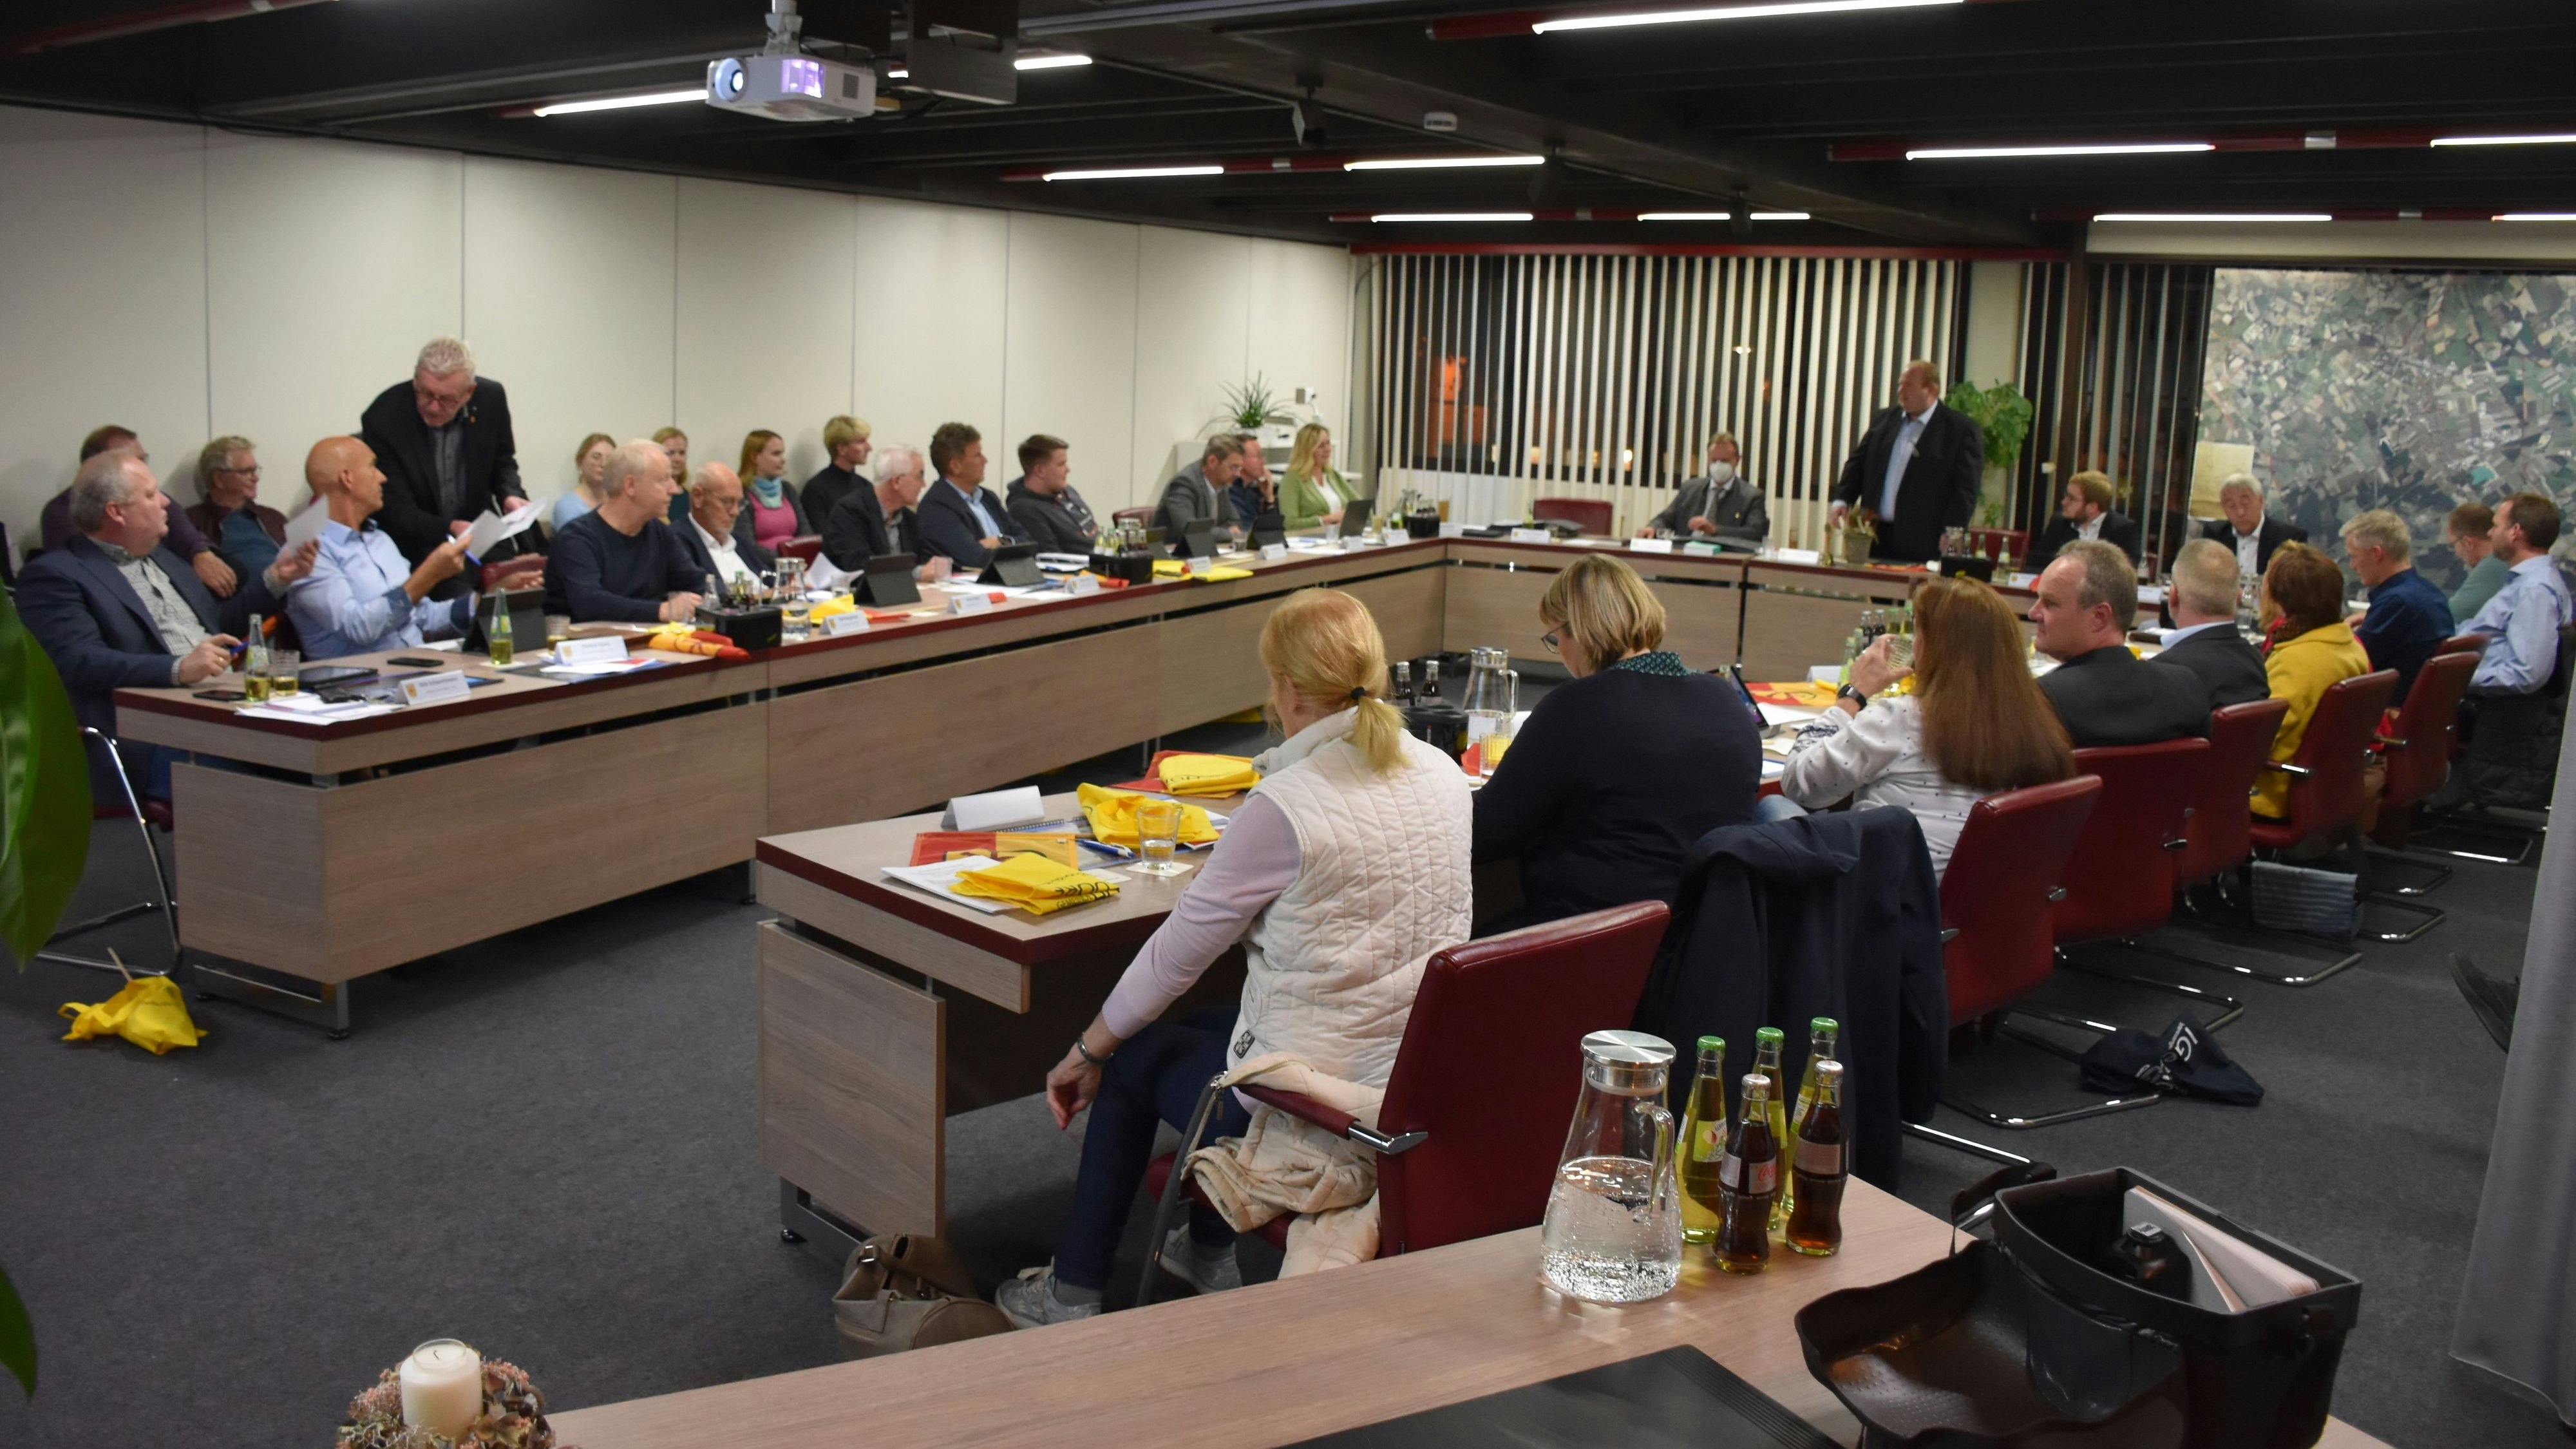 Die erste Sitzung des neuen Holdorfer Gemeinderates wurde gut besucht – unter anderem von einer Hand voll ehemaligen Ratspolitikern. Foto: Böckmann